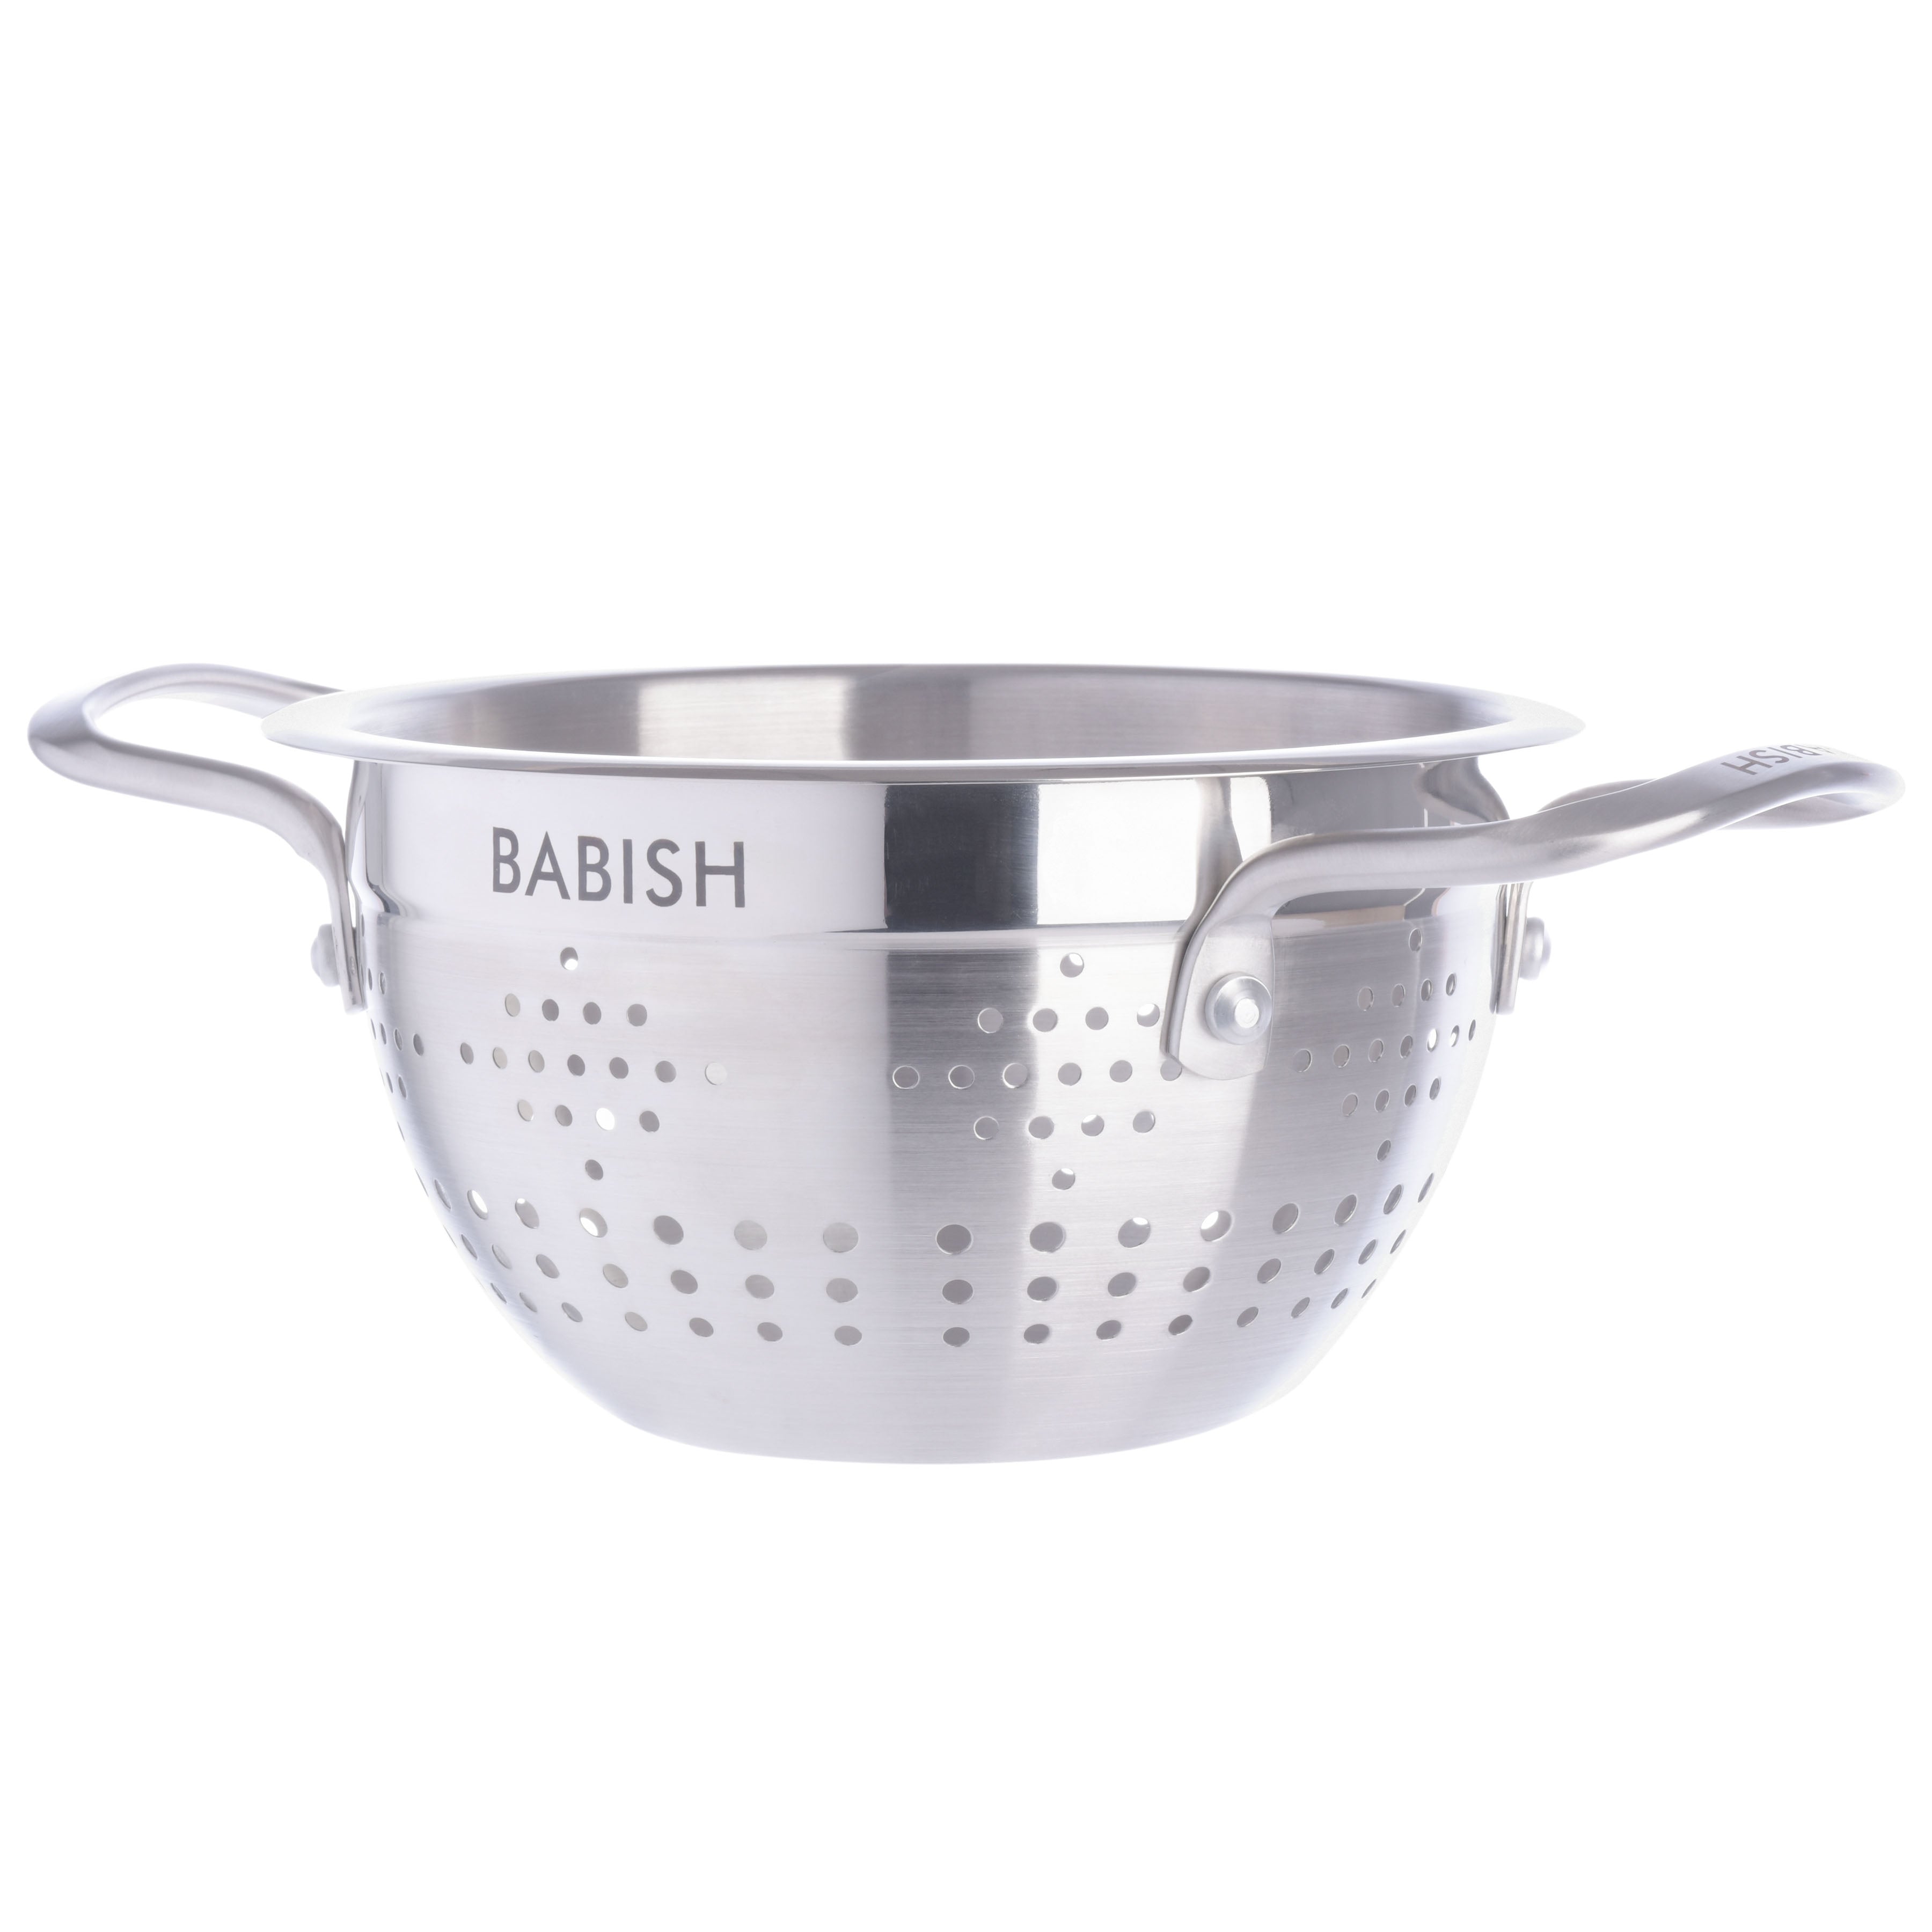 Babish Knives Review, Babish Cookware Collection - 2023